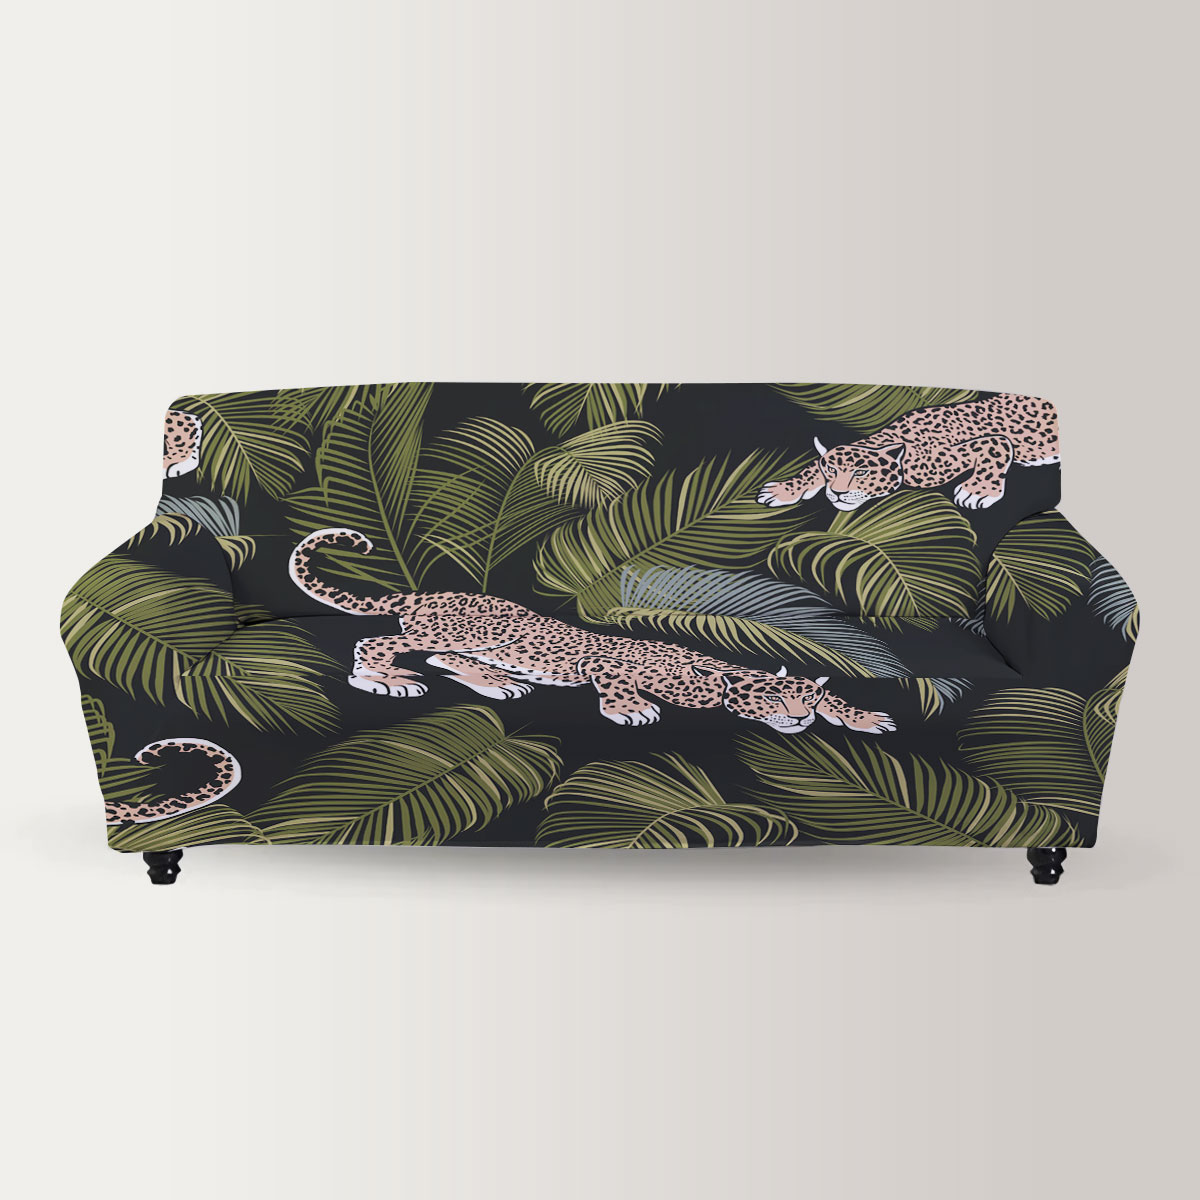 Hunting Jaguar Sofa Cover